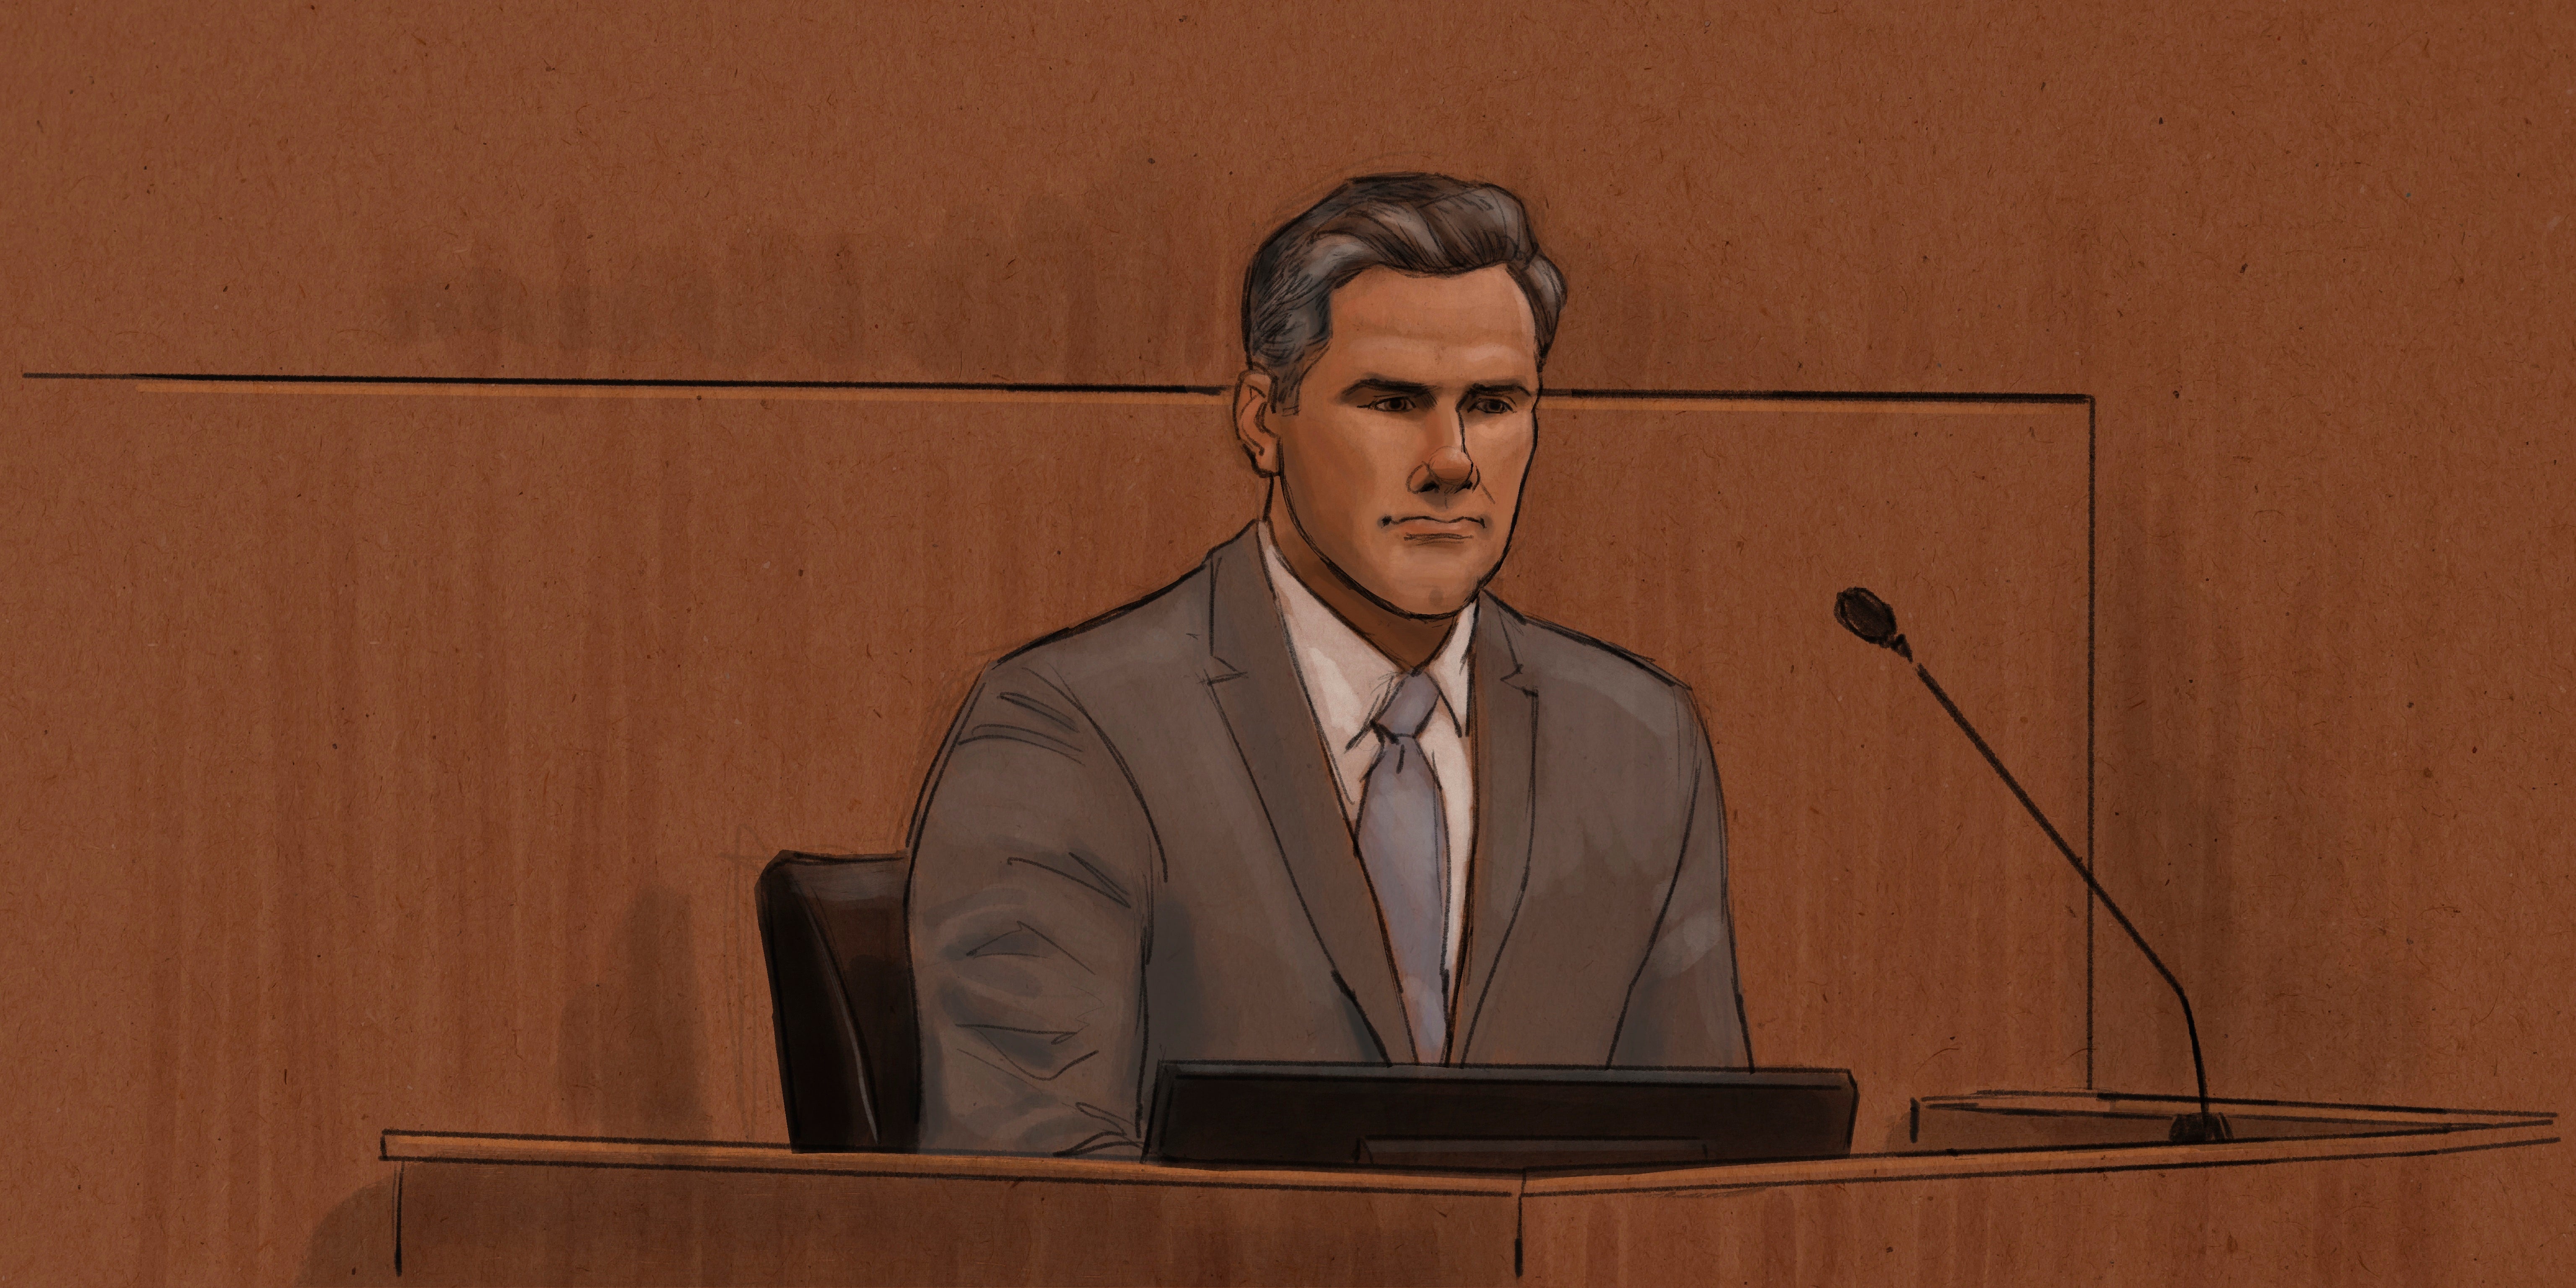 Thomas Lane retratado en un dibujo del tribunal mientras testifica en su juicio